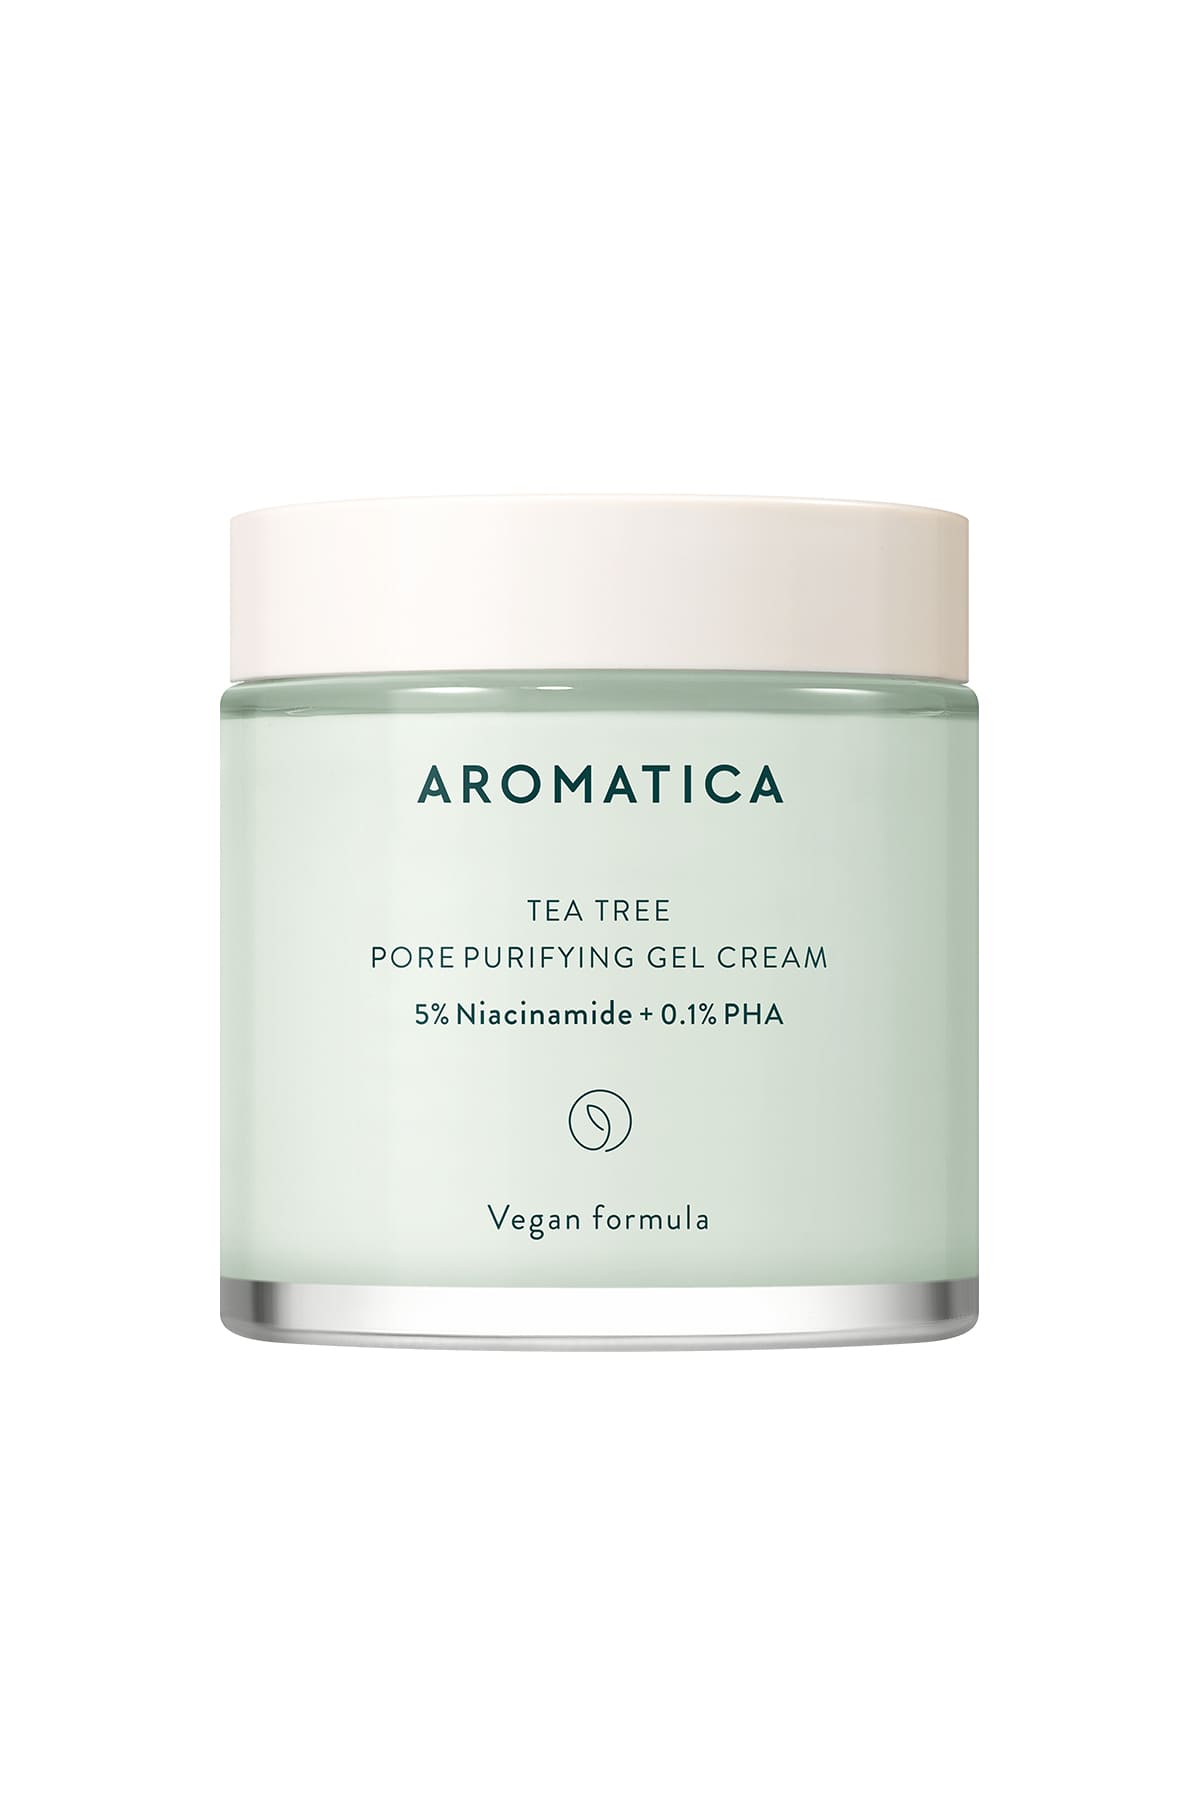 Aromatica Tea Tree Pore Purifying Gel Cream 5% Niacinamide + 0.1% PHA - Çay Ağacı Jel Kremi